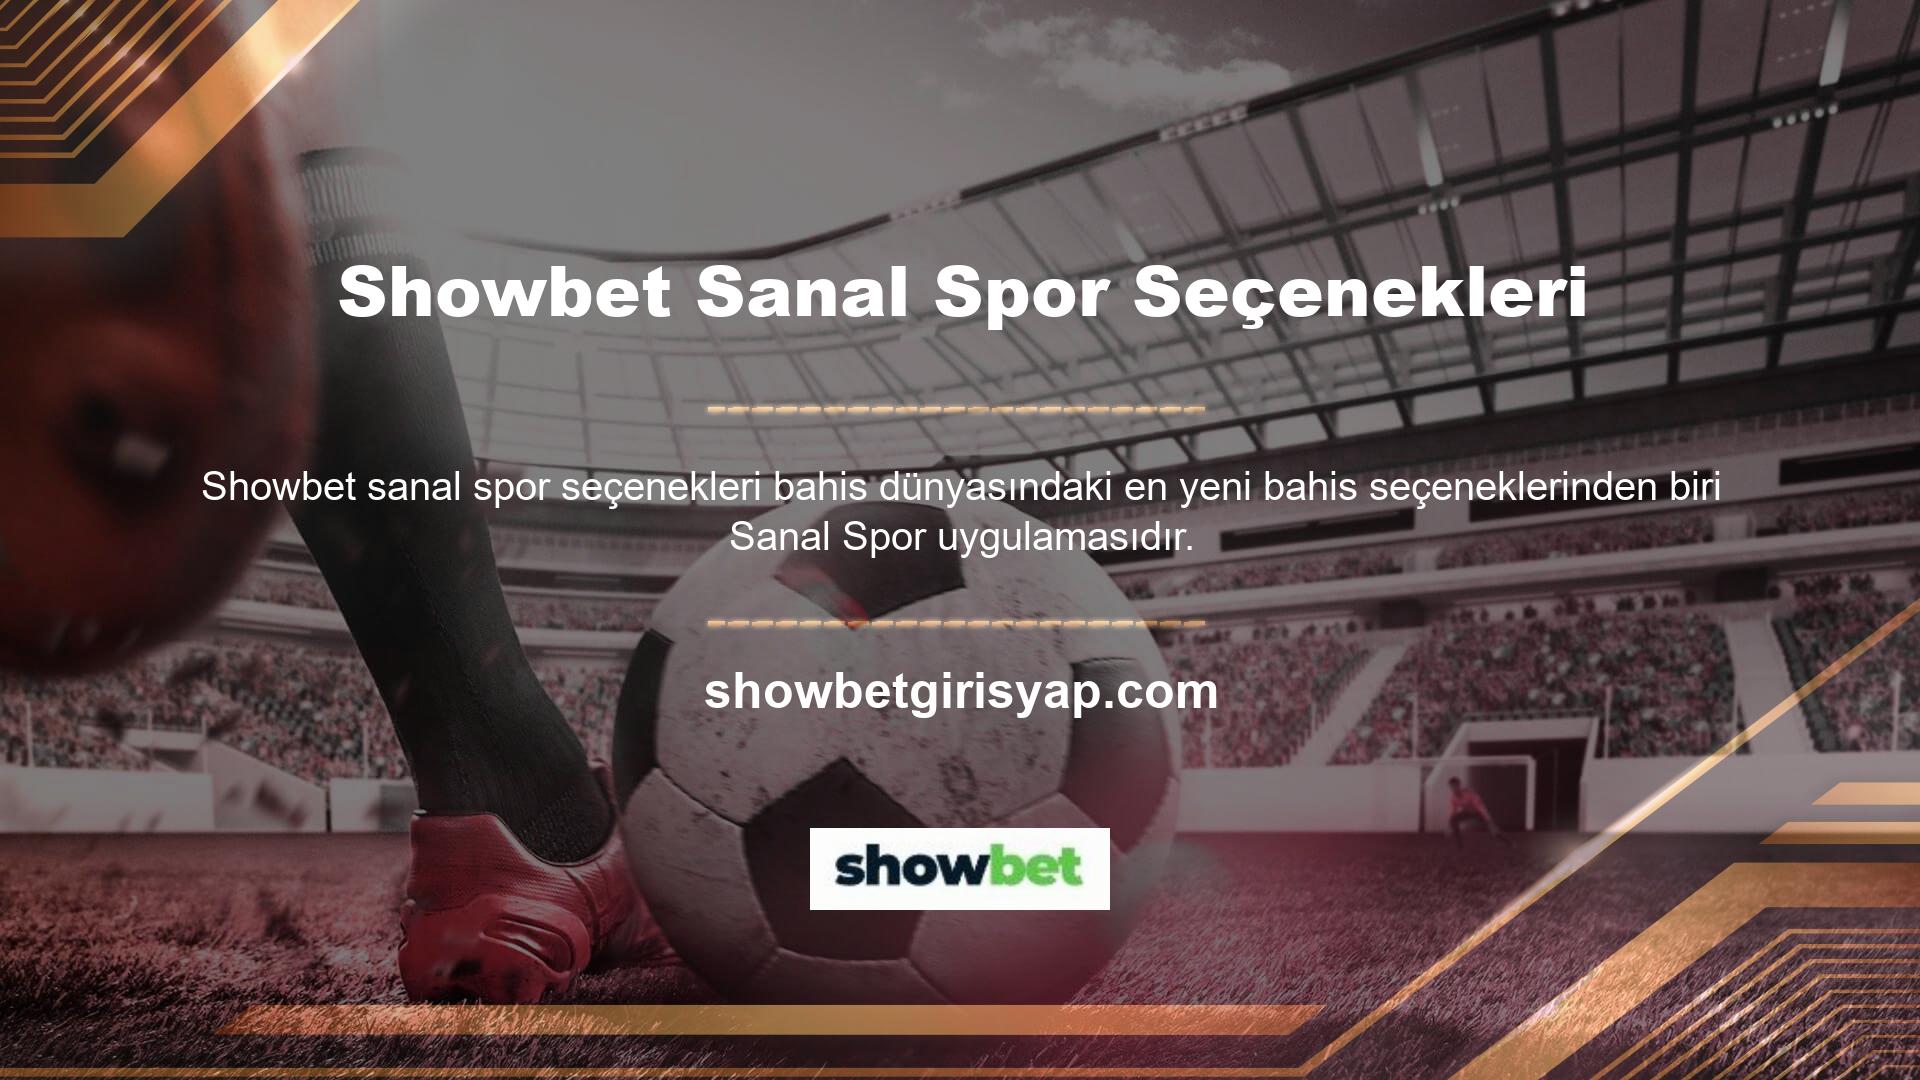 Showbet yeni adresi sanal sporlar alanında geniş bir spor profiline sahip